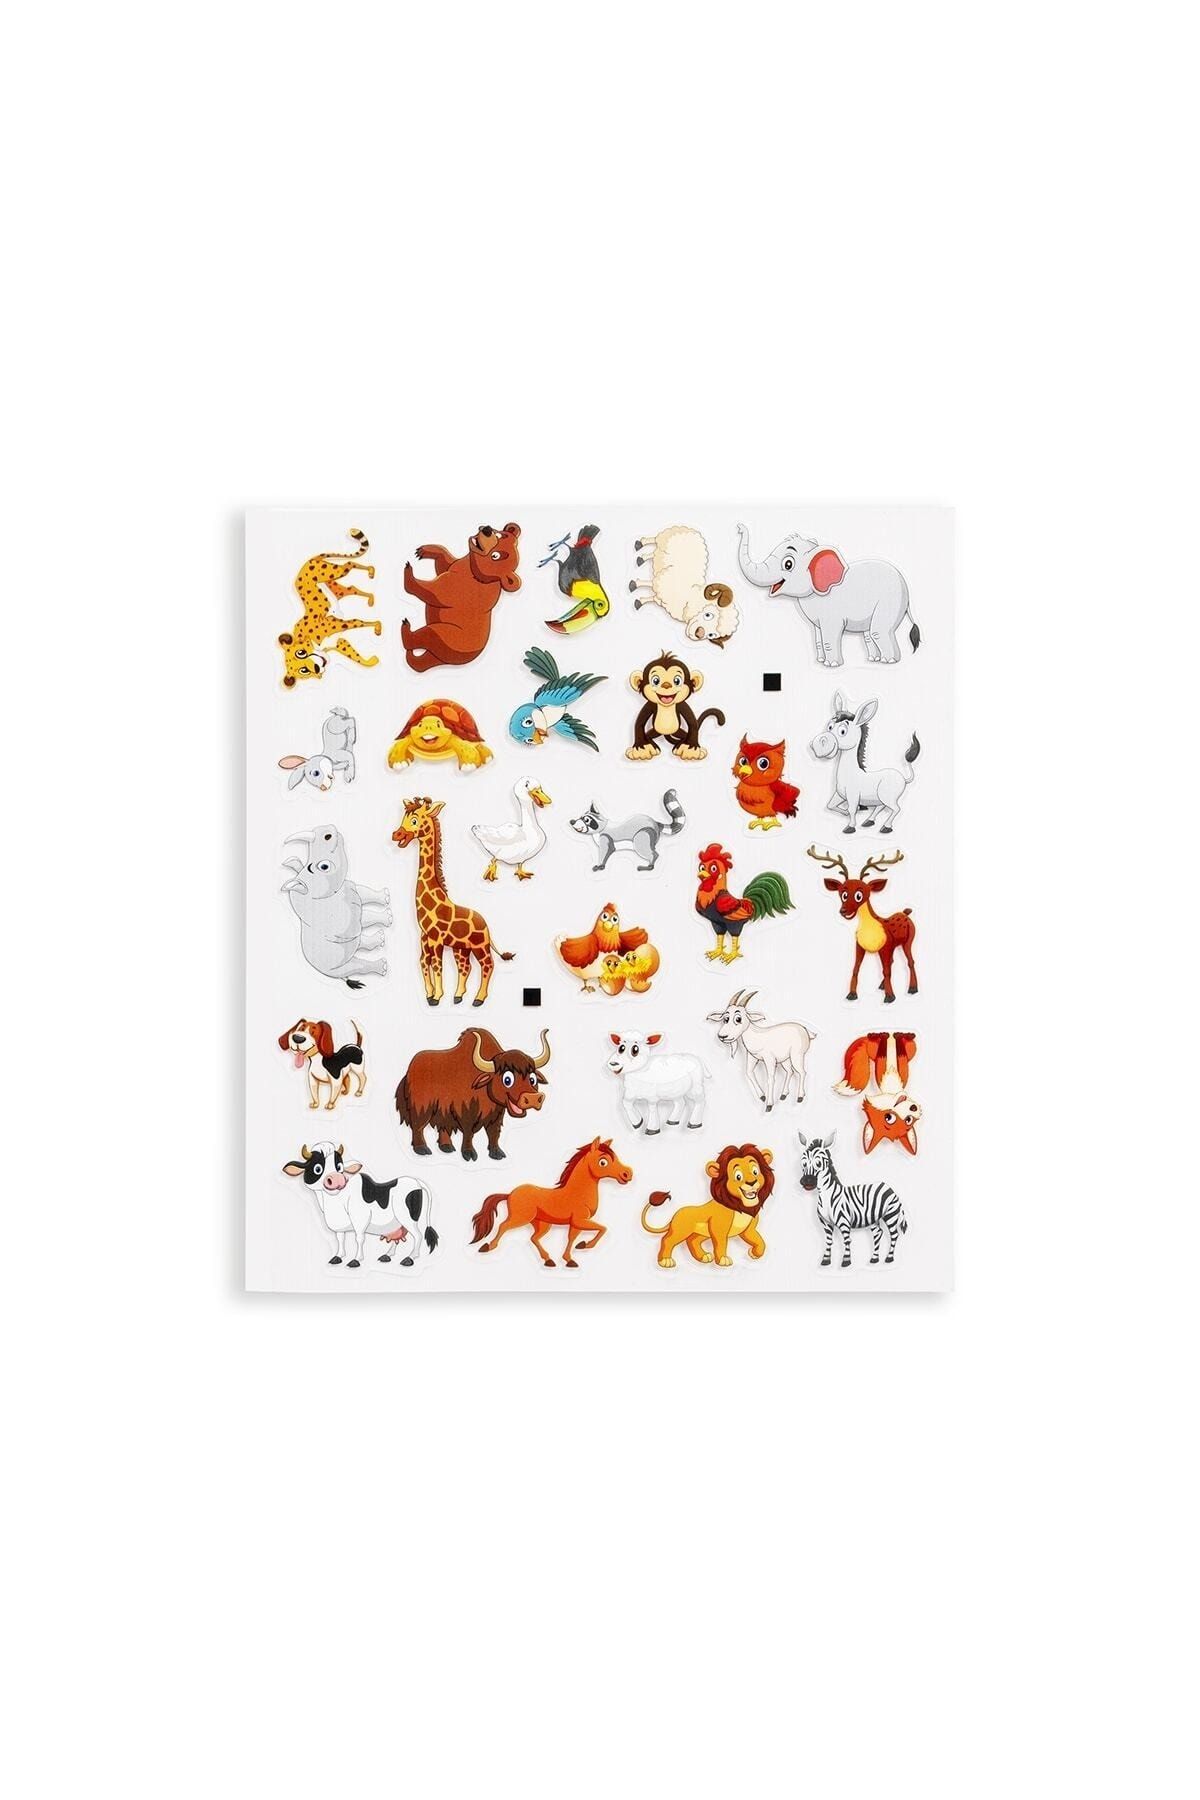 Pedagog Onaylı Bitmeyen Sticker Kitabım Tekrar Tekrar Kullanılabilir Stickerlar Hayvanlar Alemi